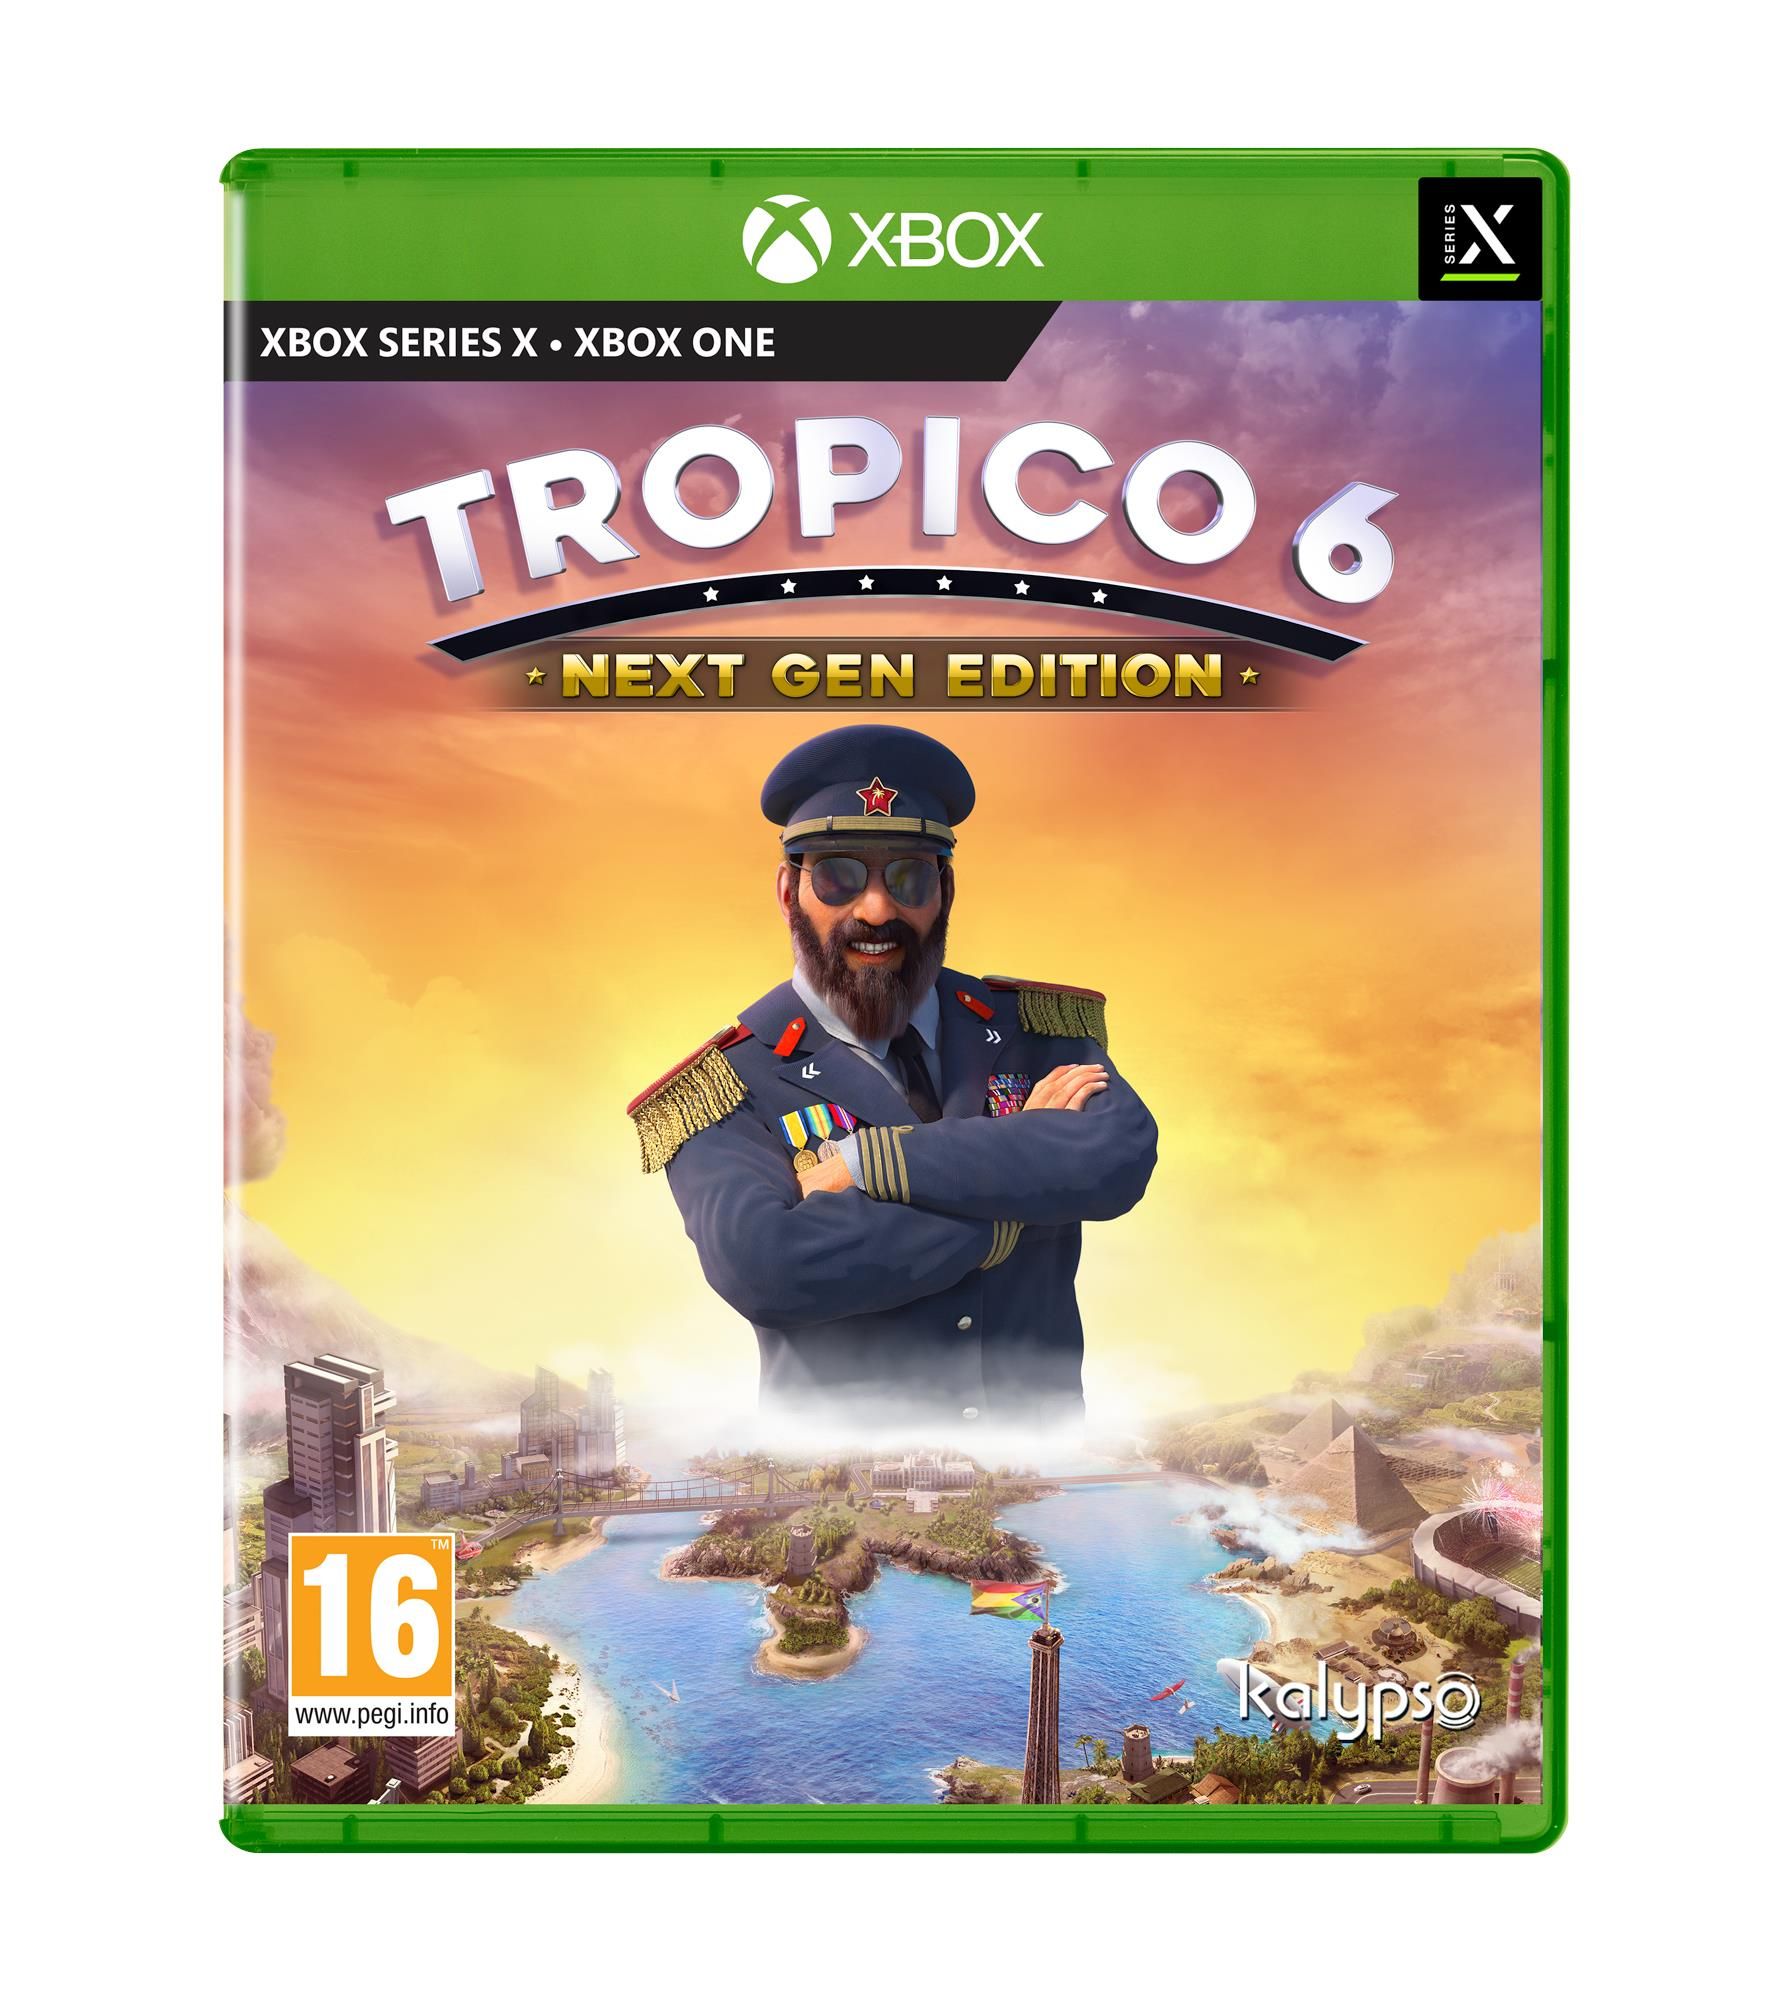 Kalypso Videogioco Tropico 6